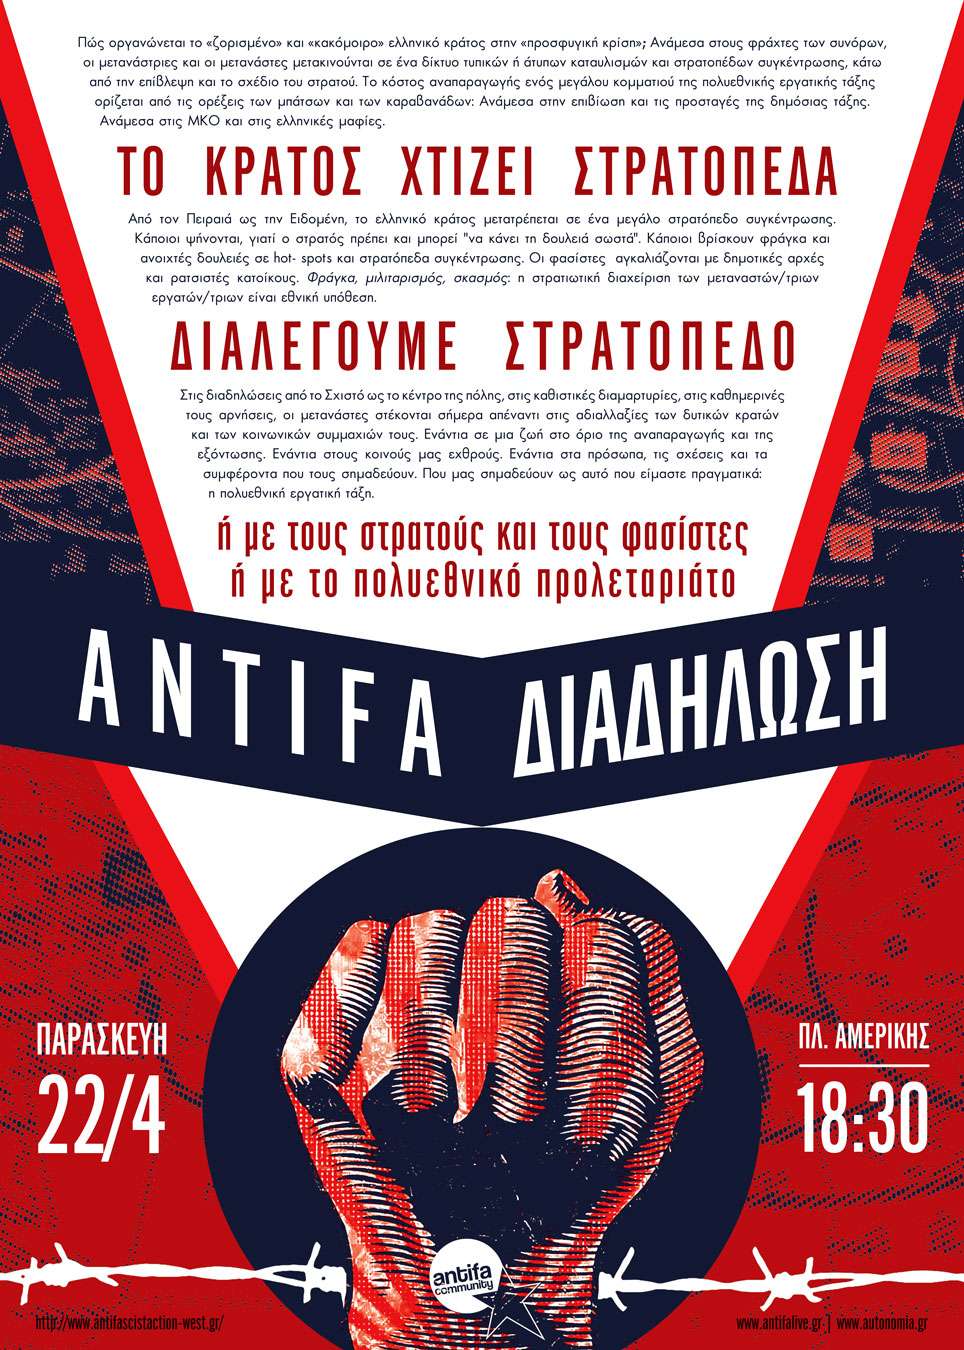 Αθήνα: Προπαγανδιστική μοτοπορεία αλληλεγγύης για την antifa πορεία